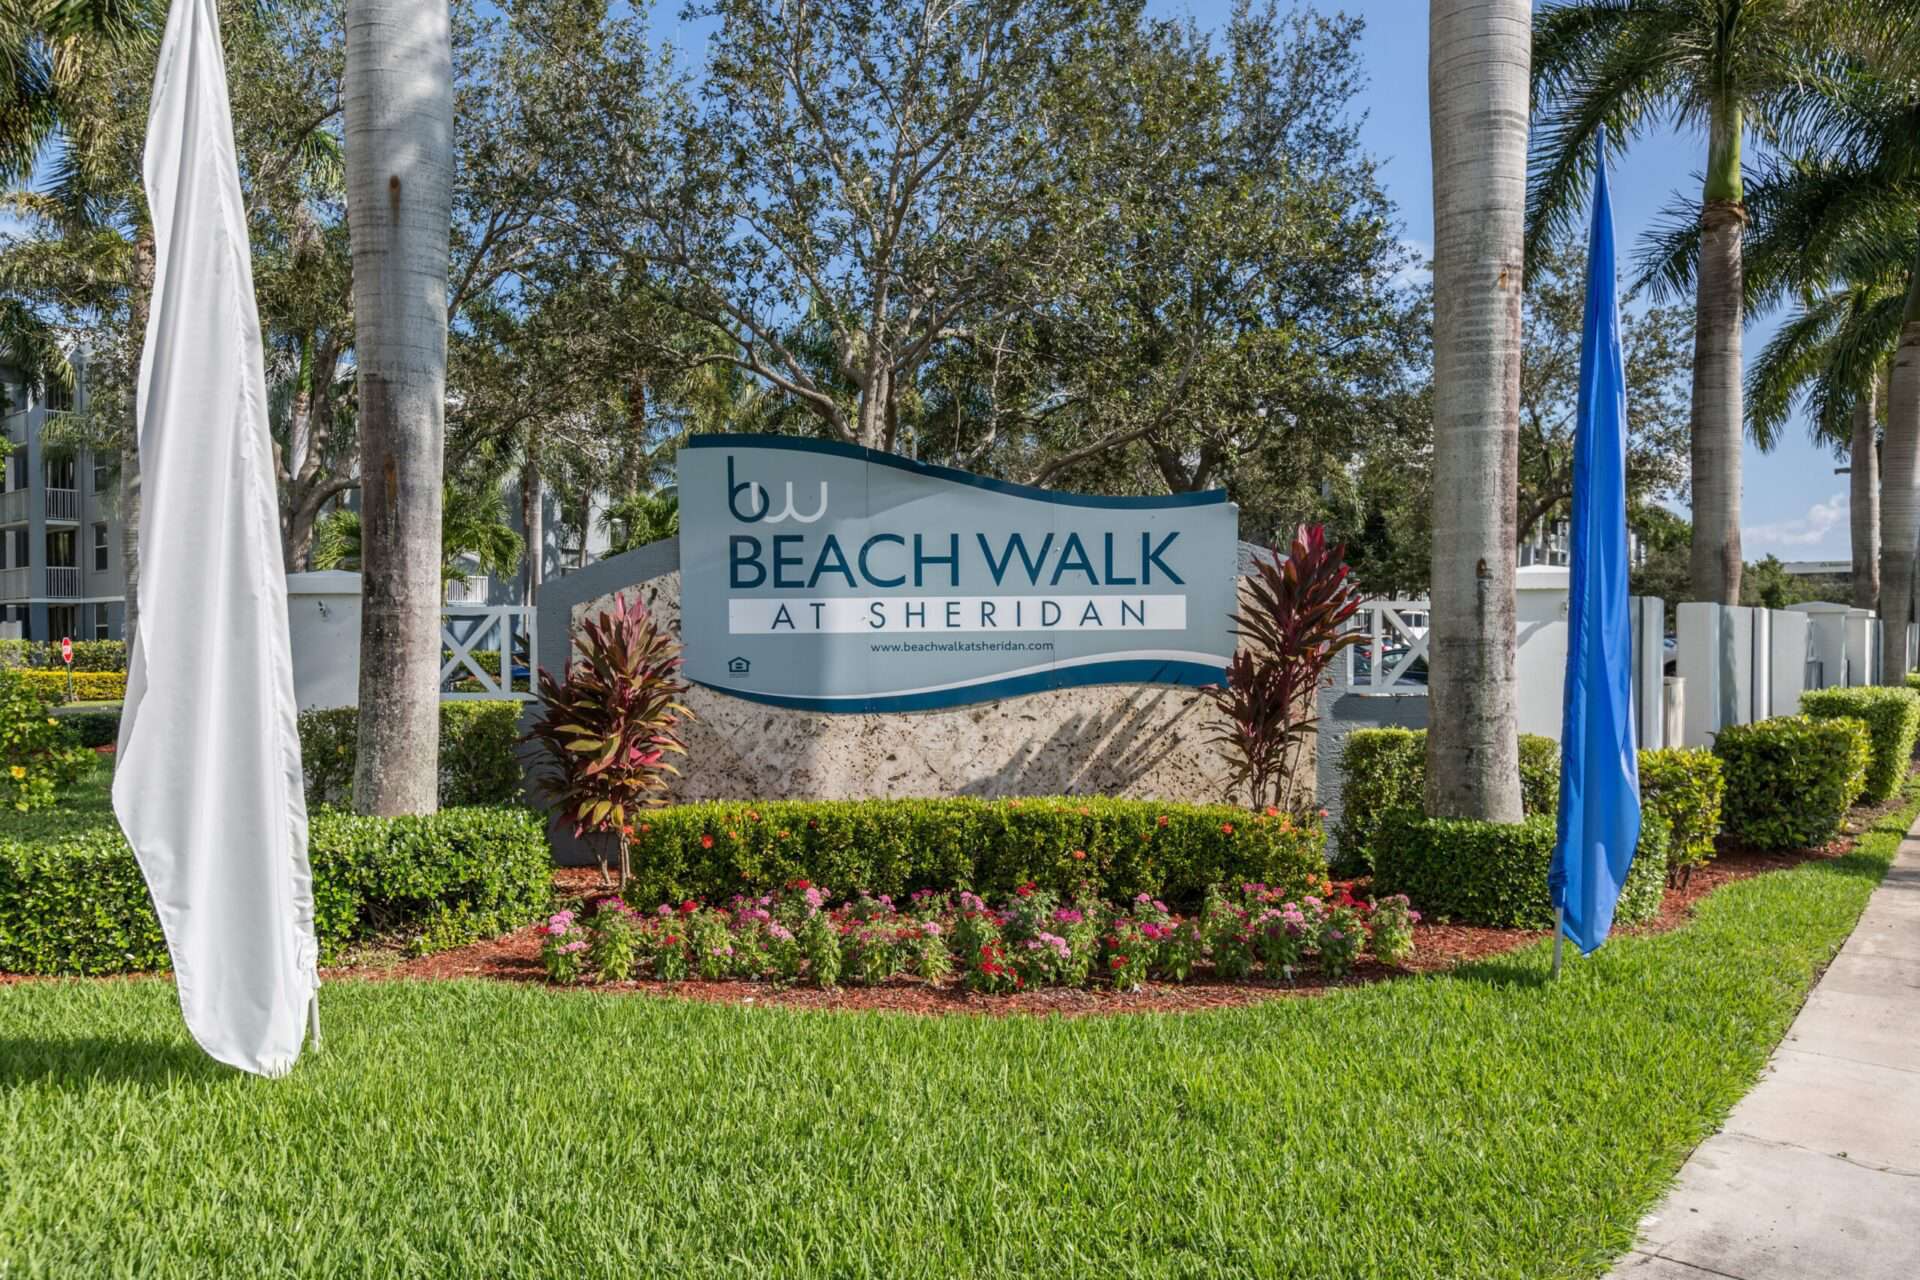 Beach Walk at Sheridan entrance sign.